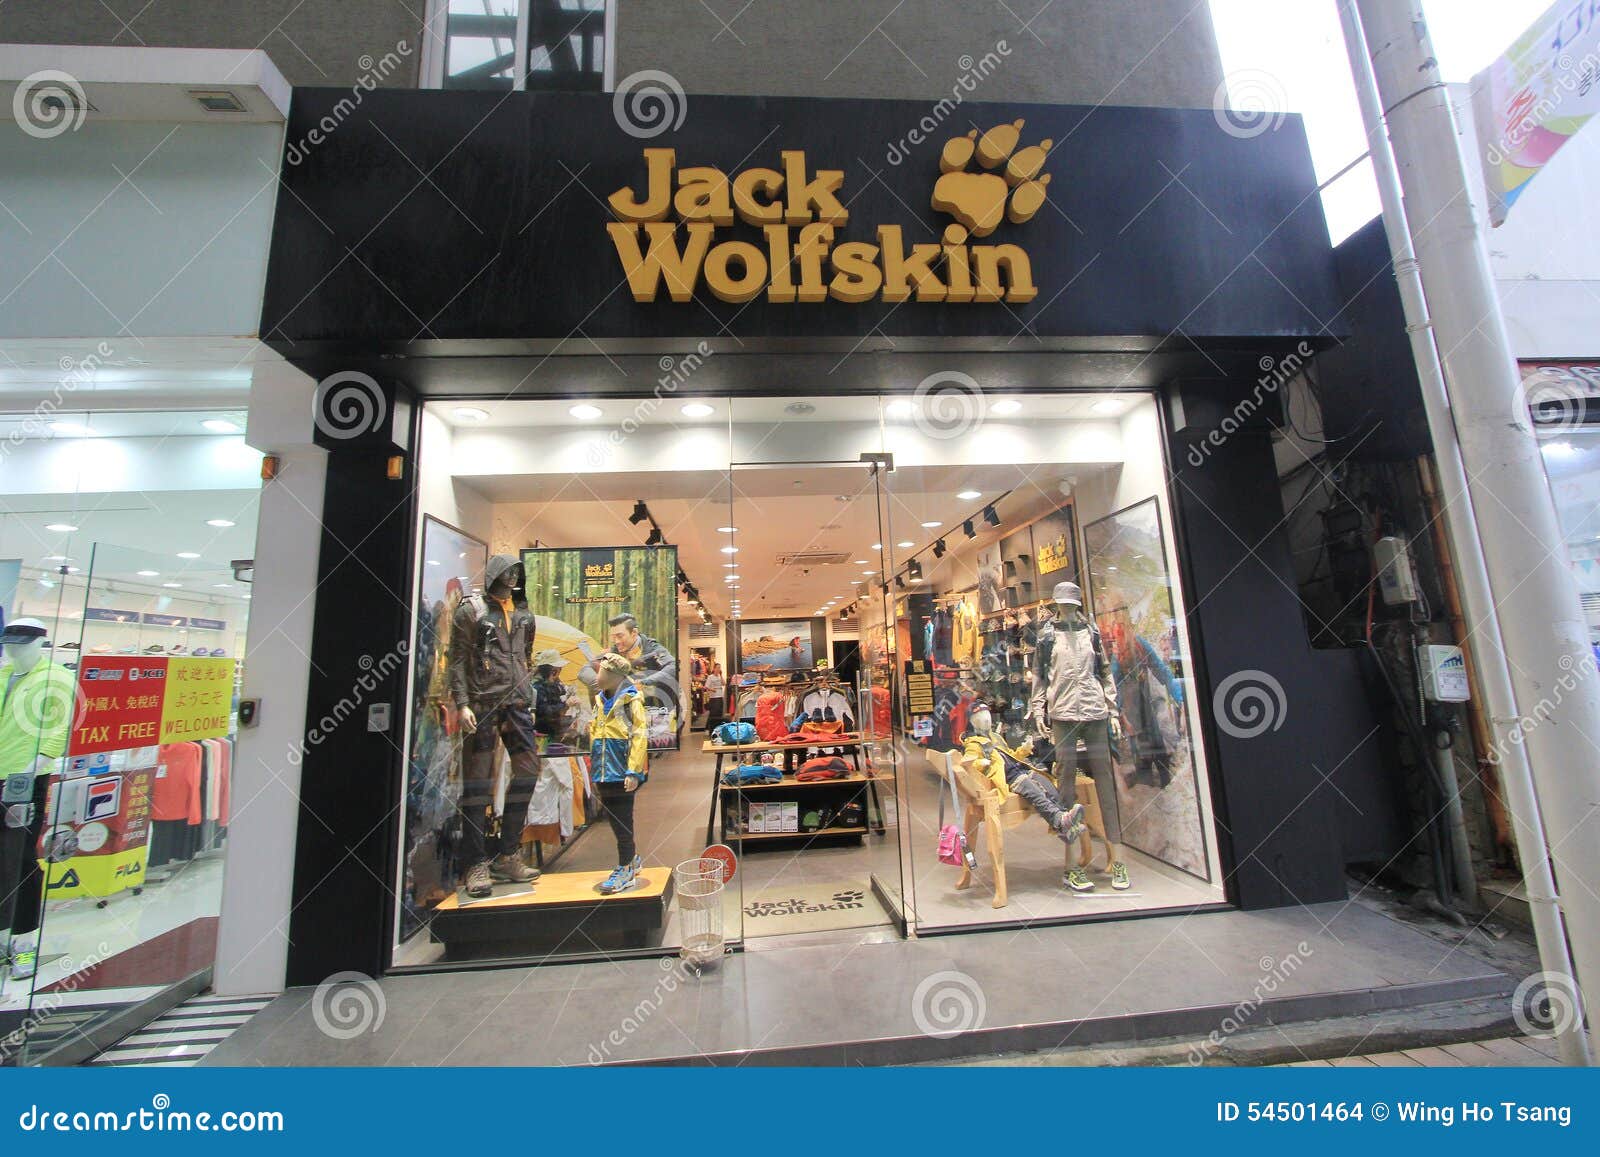 Erge, ernstige overschreden huwelijk Jack Wolfskin Shop in South Korea Editorial Stock Image - Image of wolfskin,  town: 54501464